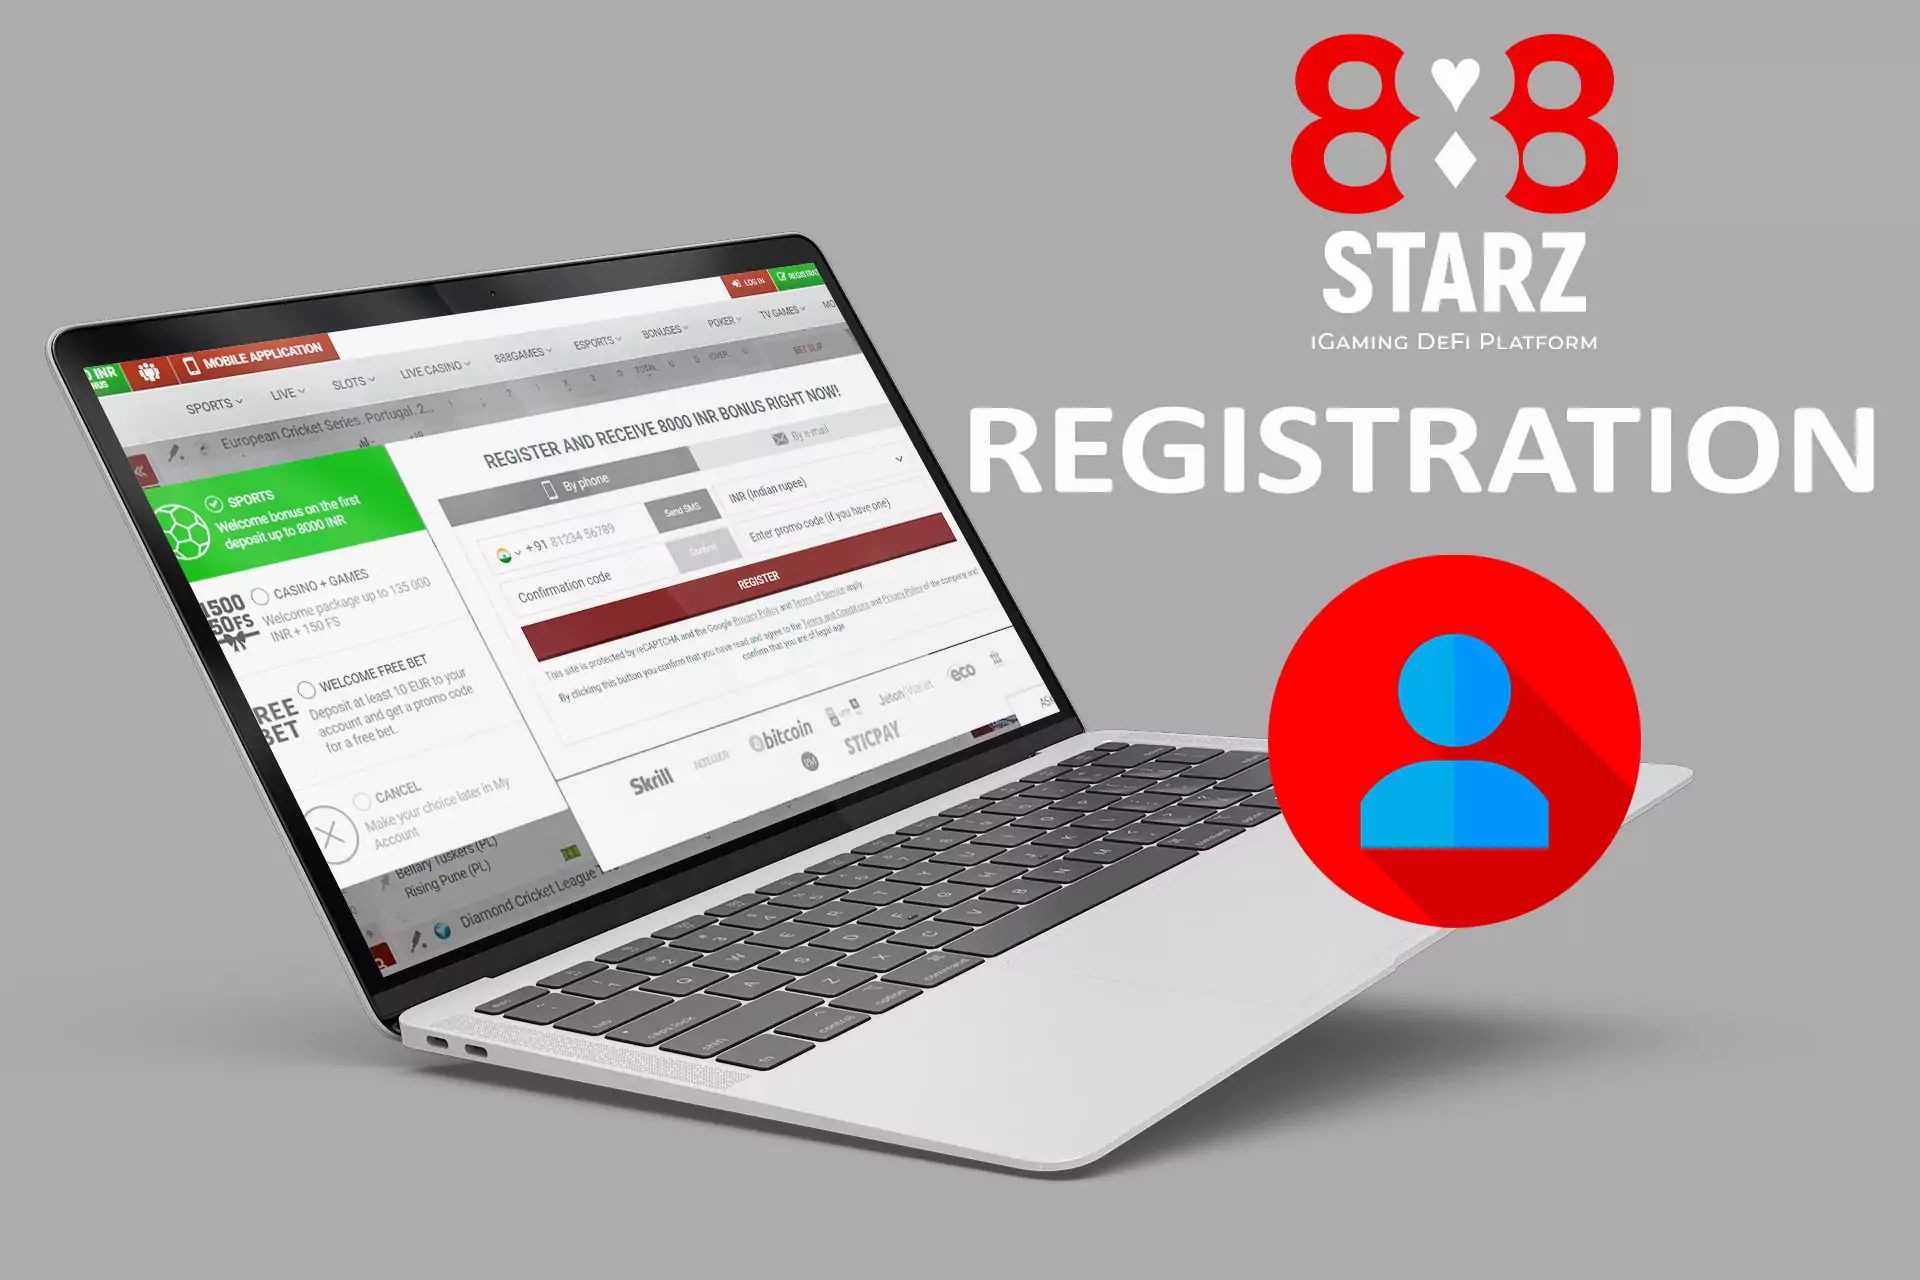 ऑनलाइन सट्टेबाजी के लिए 888starz के साथ पंजीकरण करें।